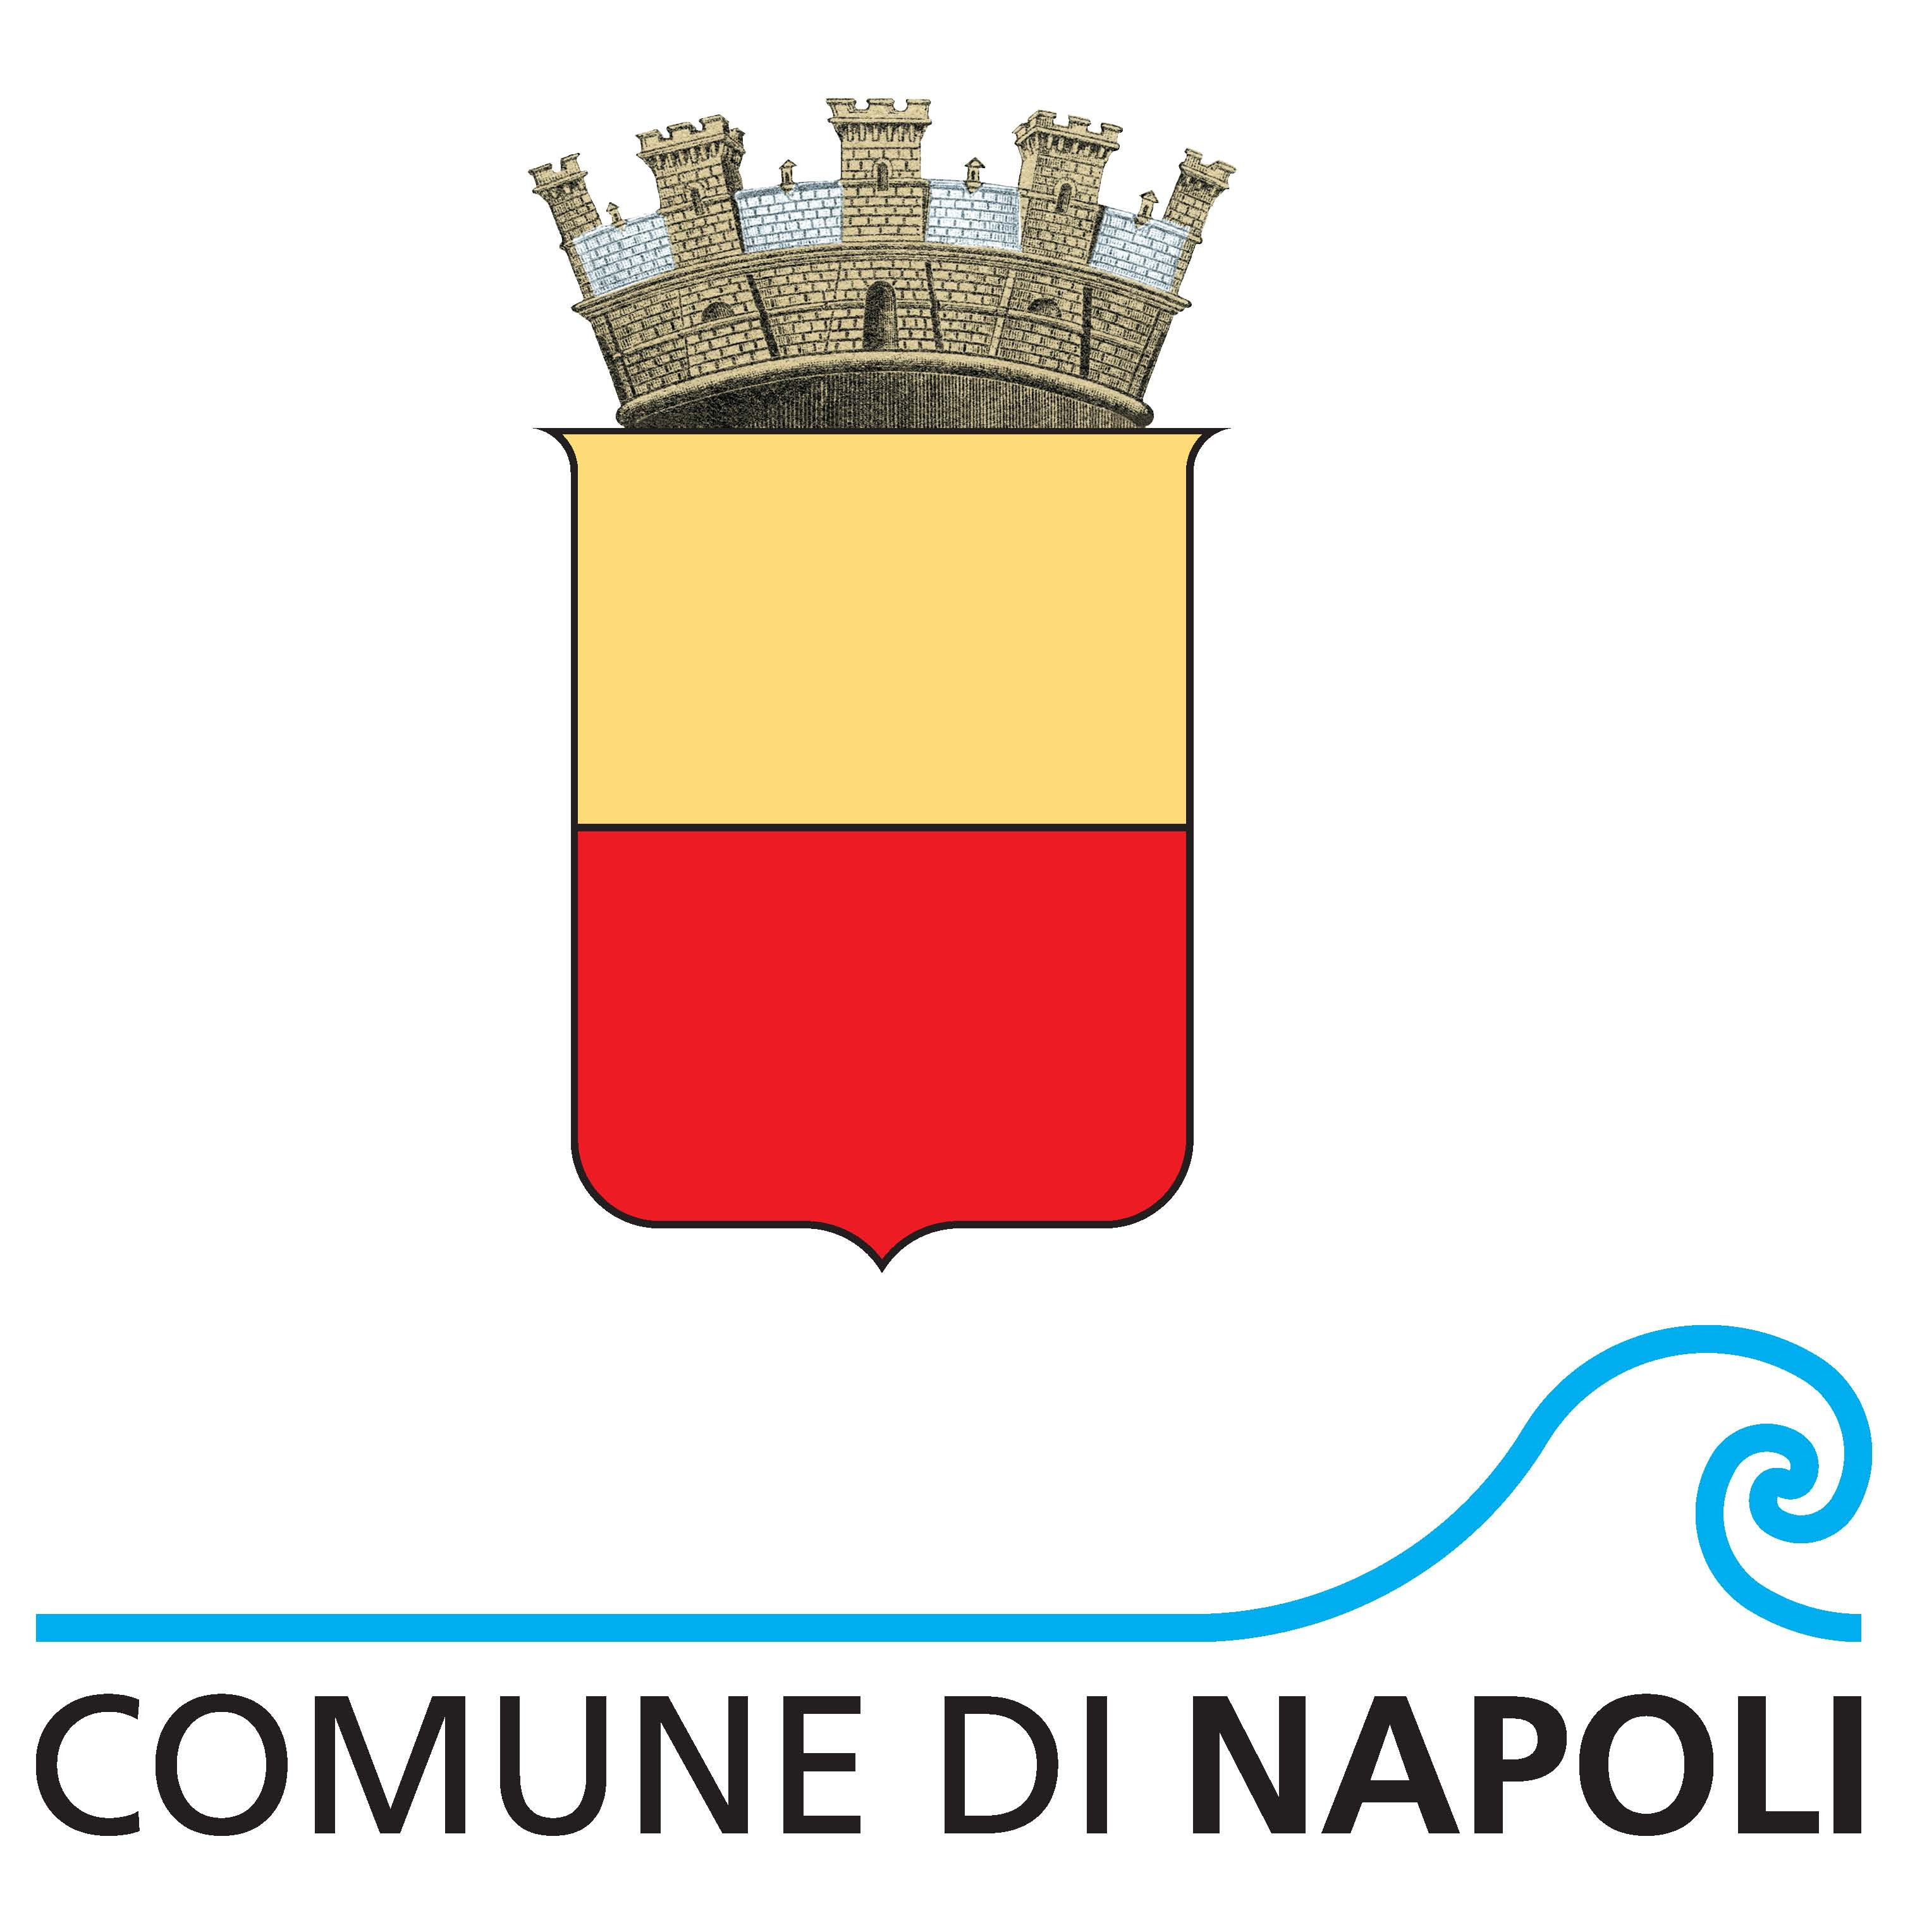 CONCORSI AL COMUNE DI NAPOLI: 1406 NUOVE UNITA' AL BANDO